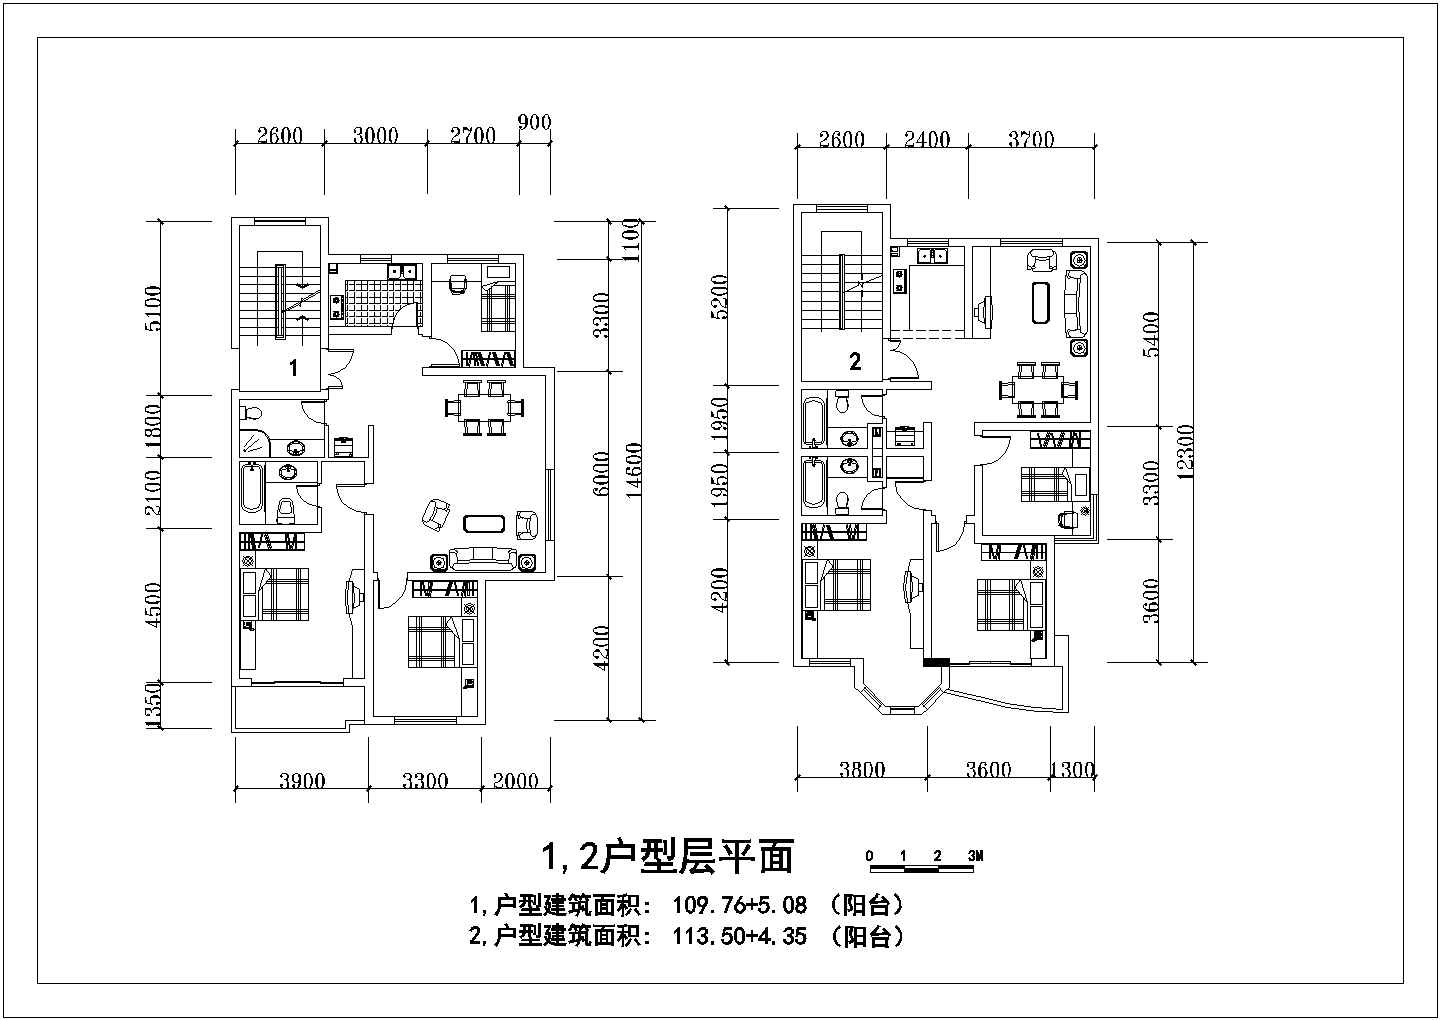 3室2厅2卫1阳台户型设计图【面积114.84平米 117.85平米】